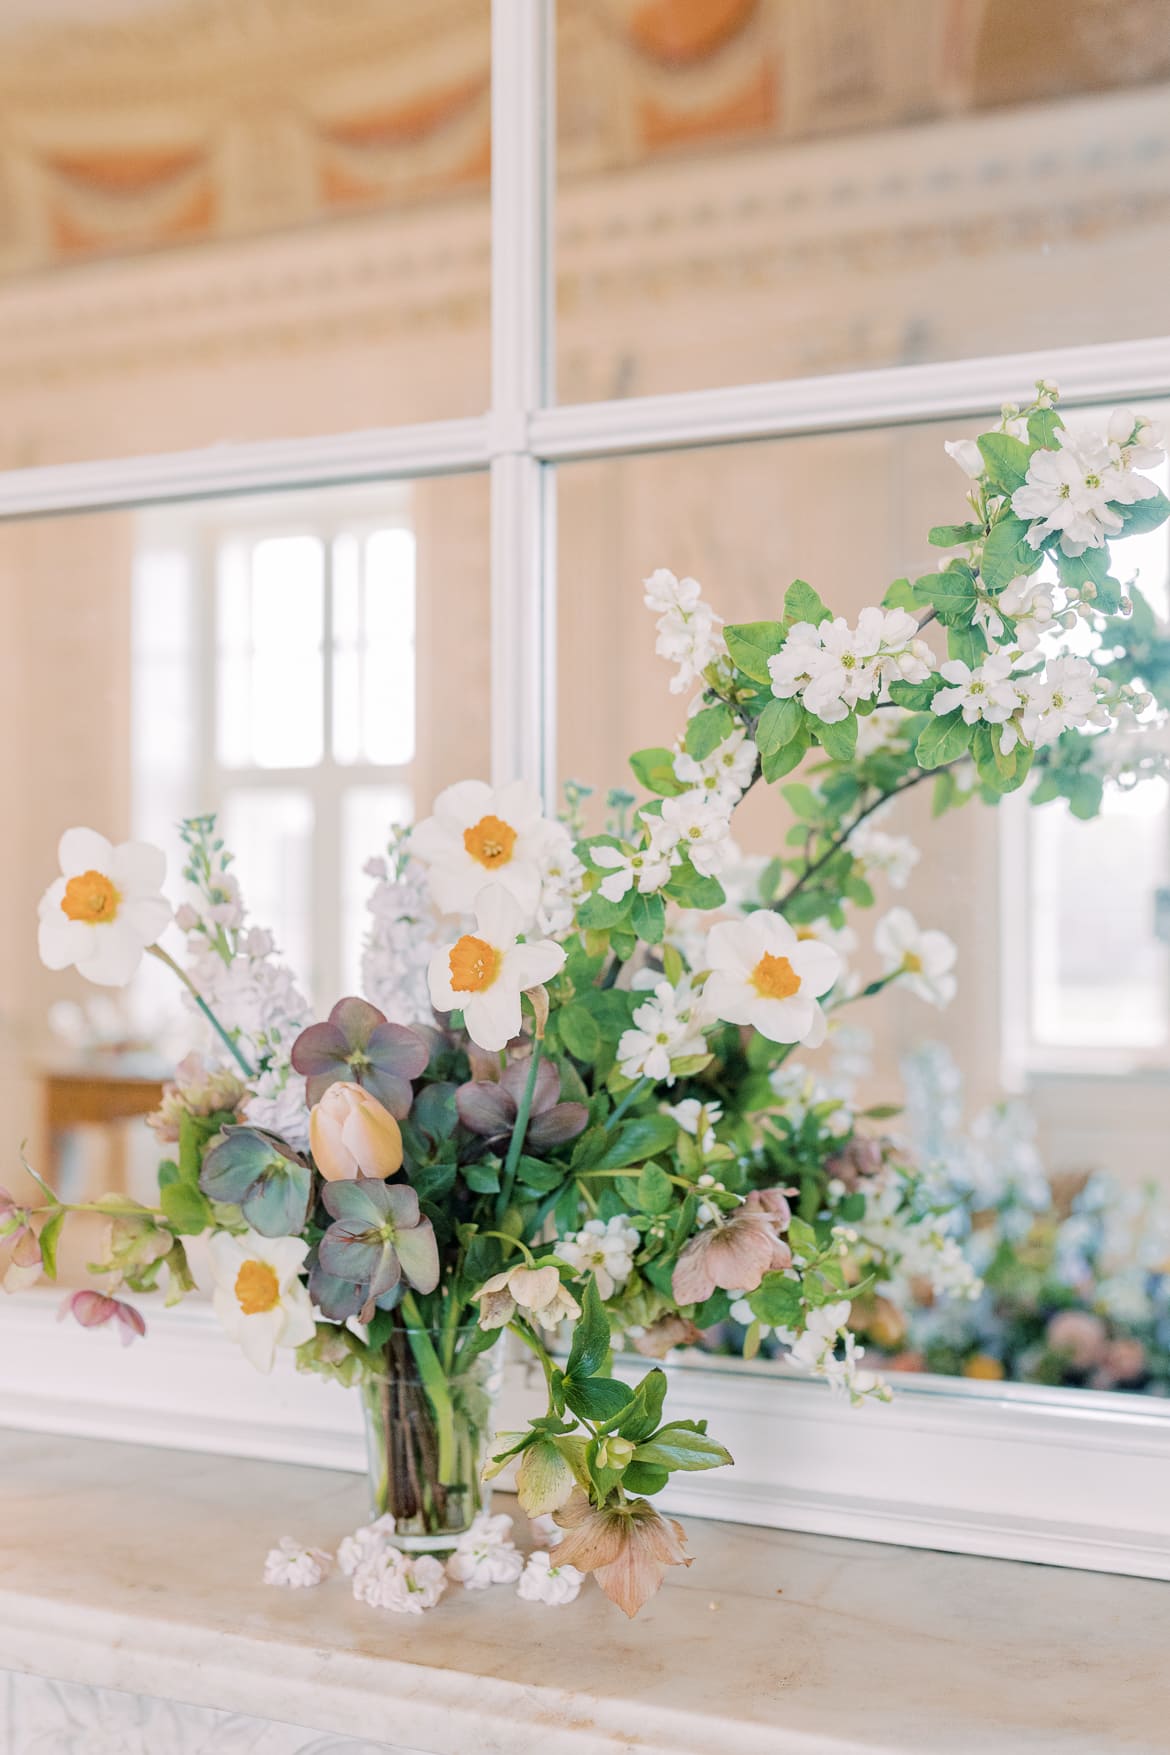 Blumen in einer Vase arrangiert vor einem Spiegel